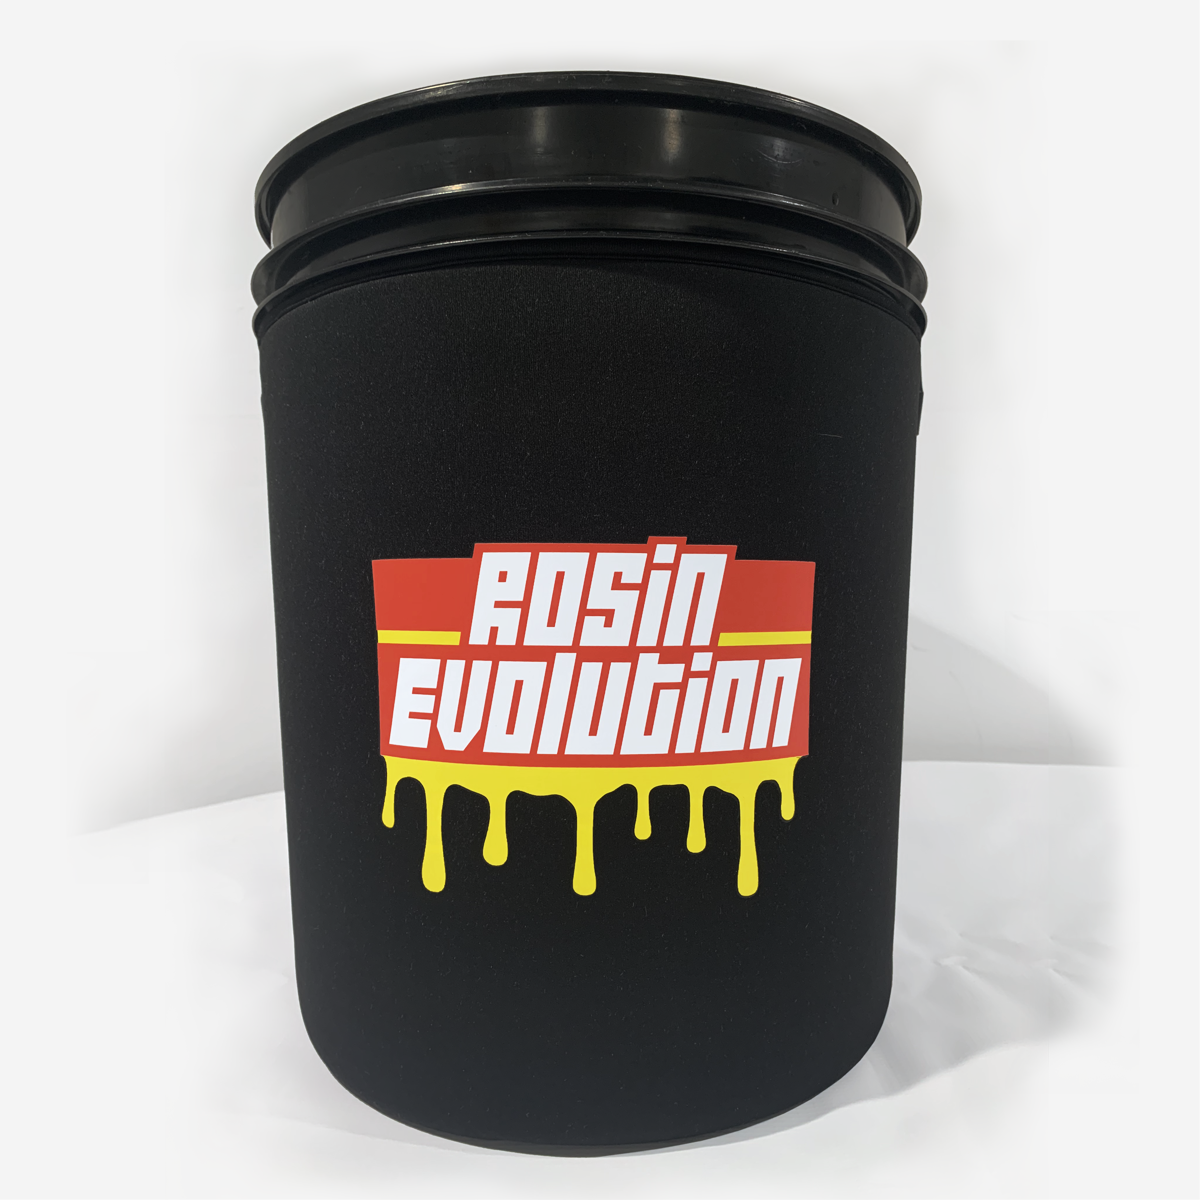 Rosin Evolution Bucket Insulator 5 gallon